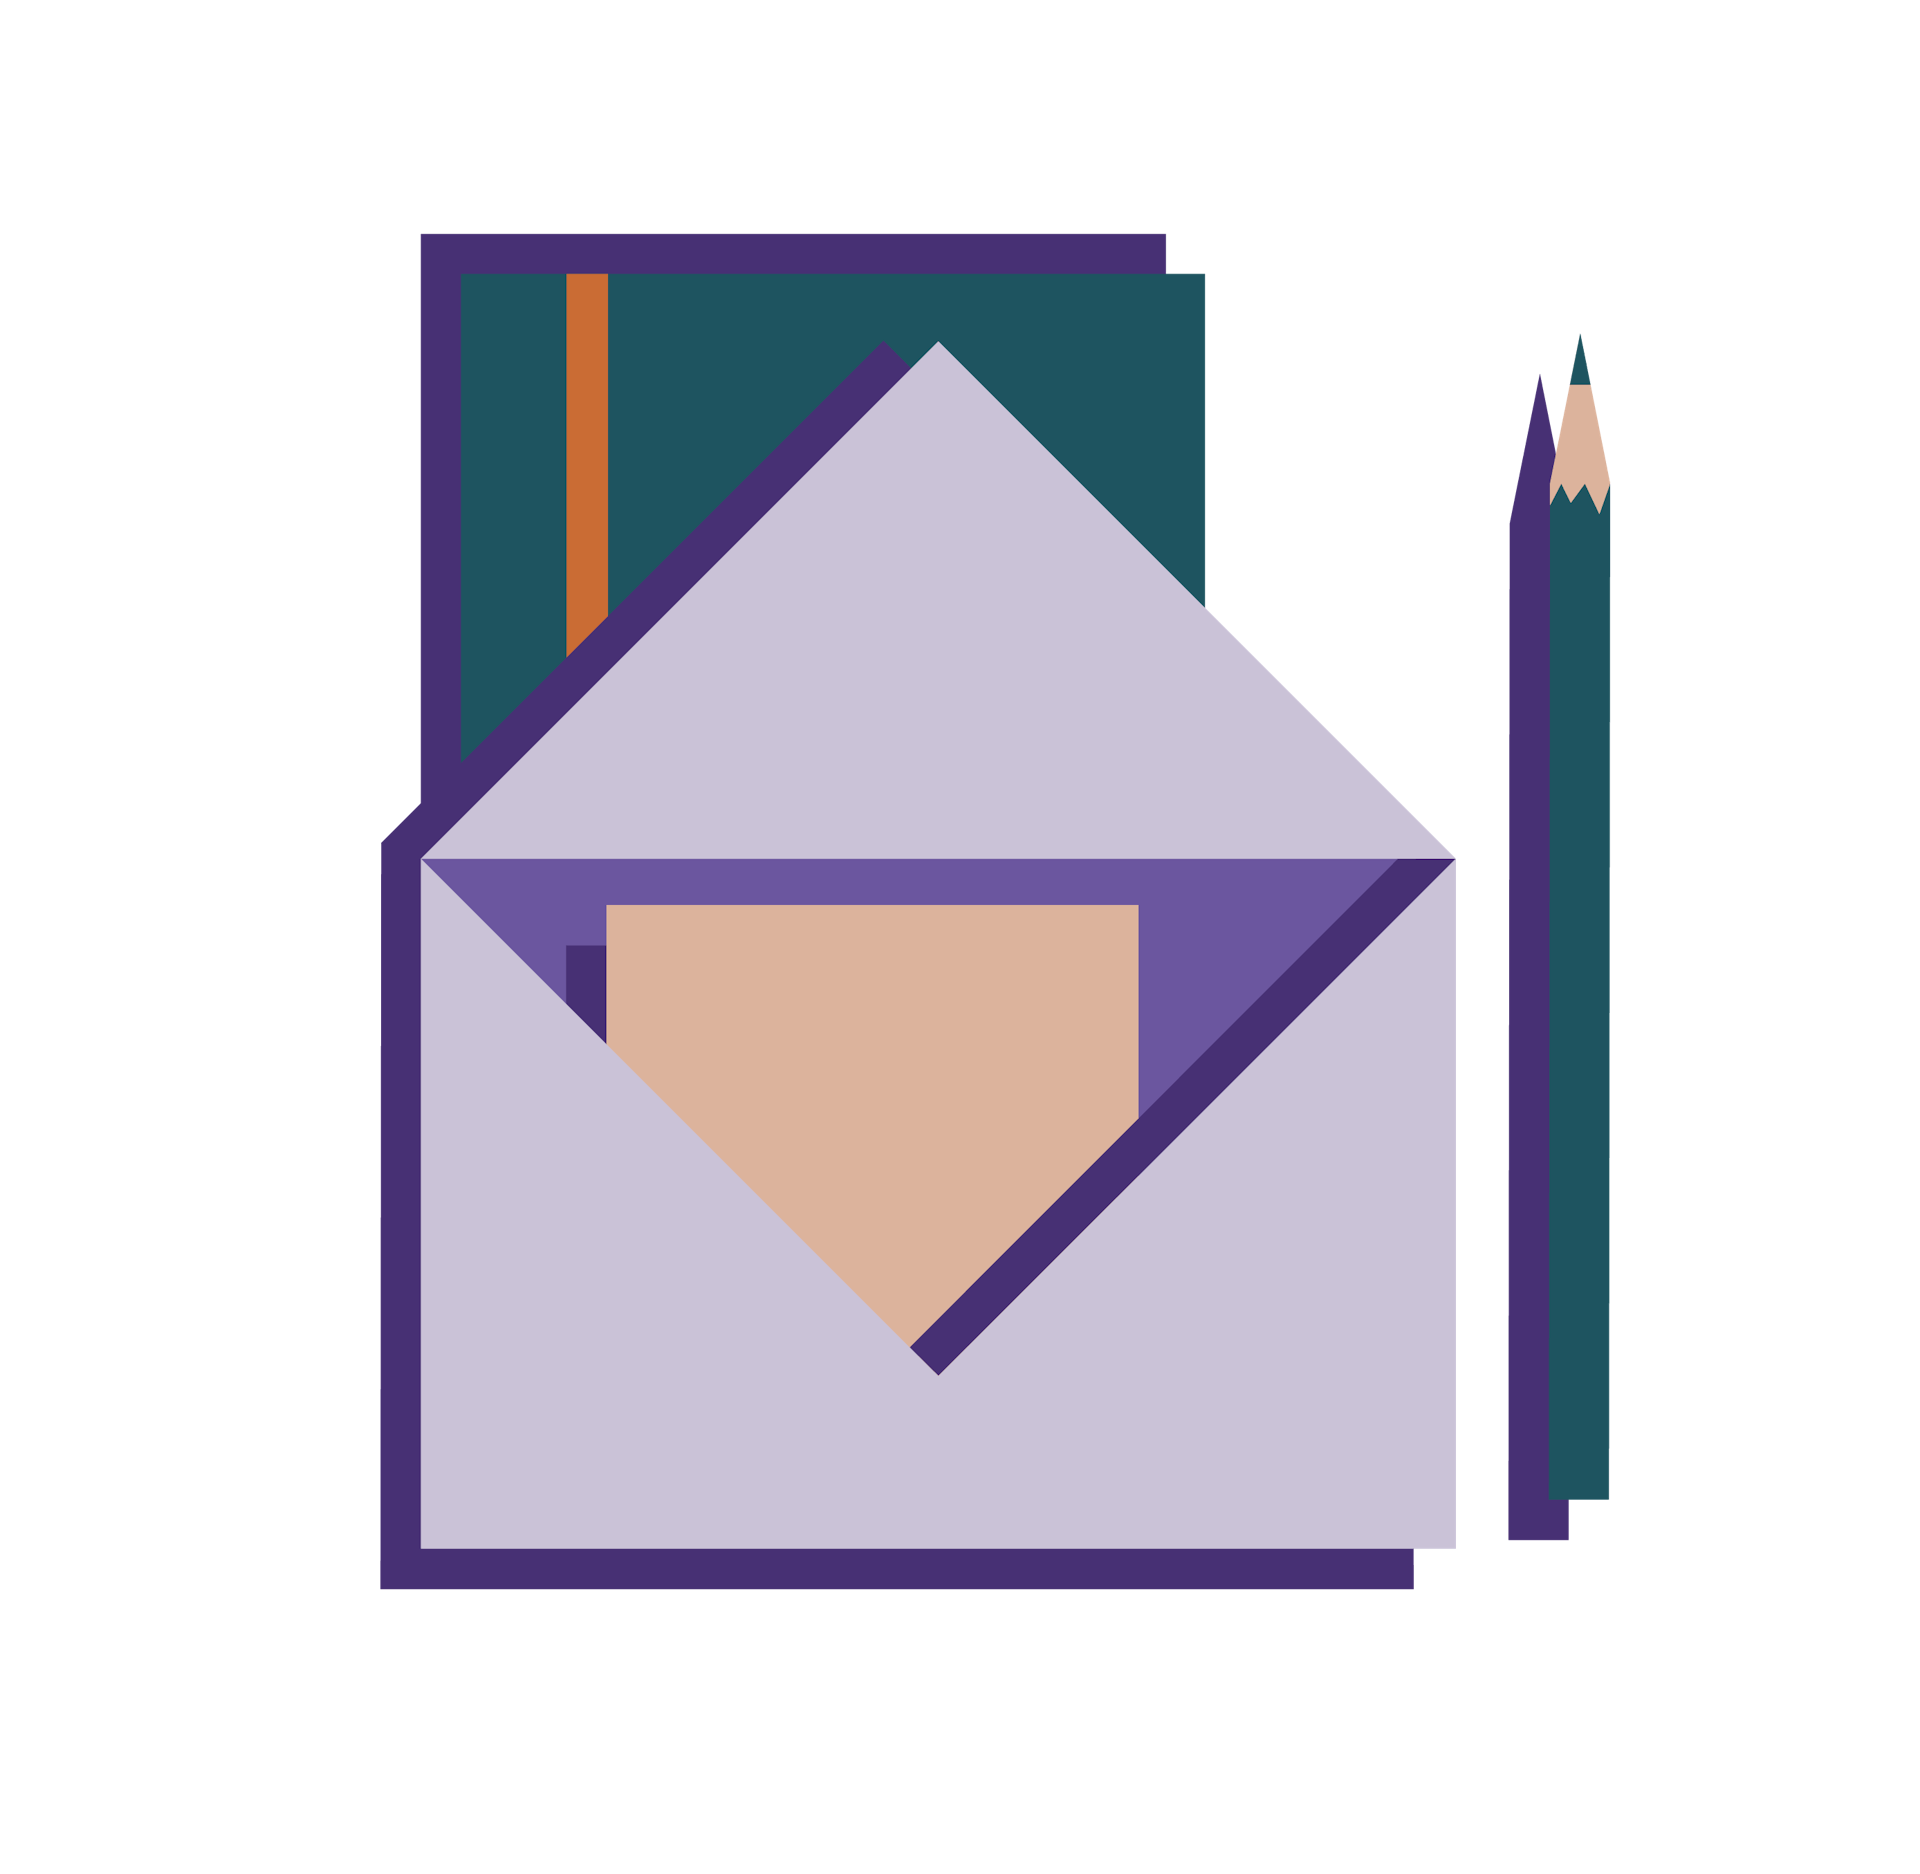 Der Kontist Letter für Selbständige und Freelancer, dargestellt im klassischen Briefumschlag mit Notizbuch und Stift